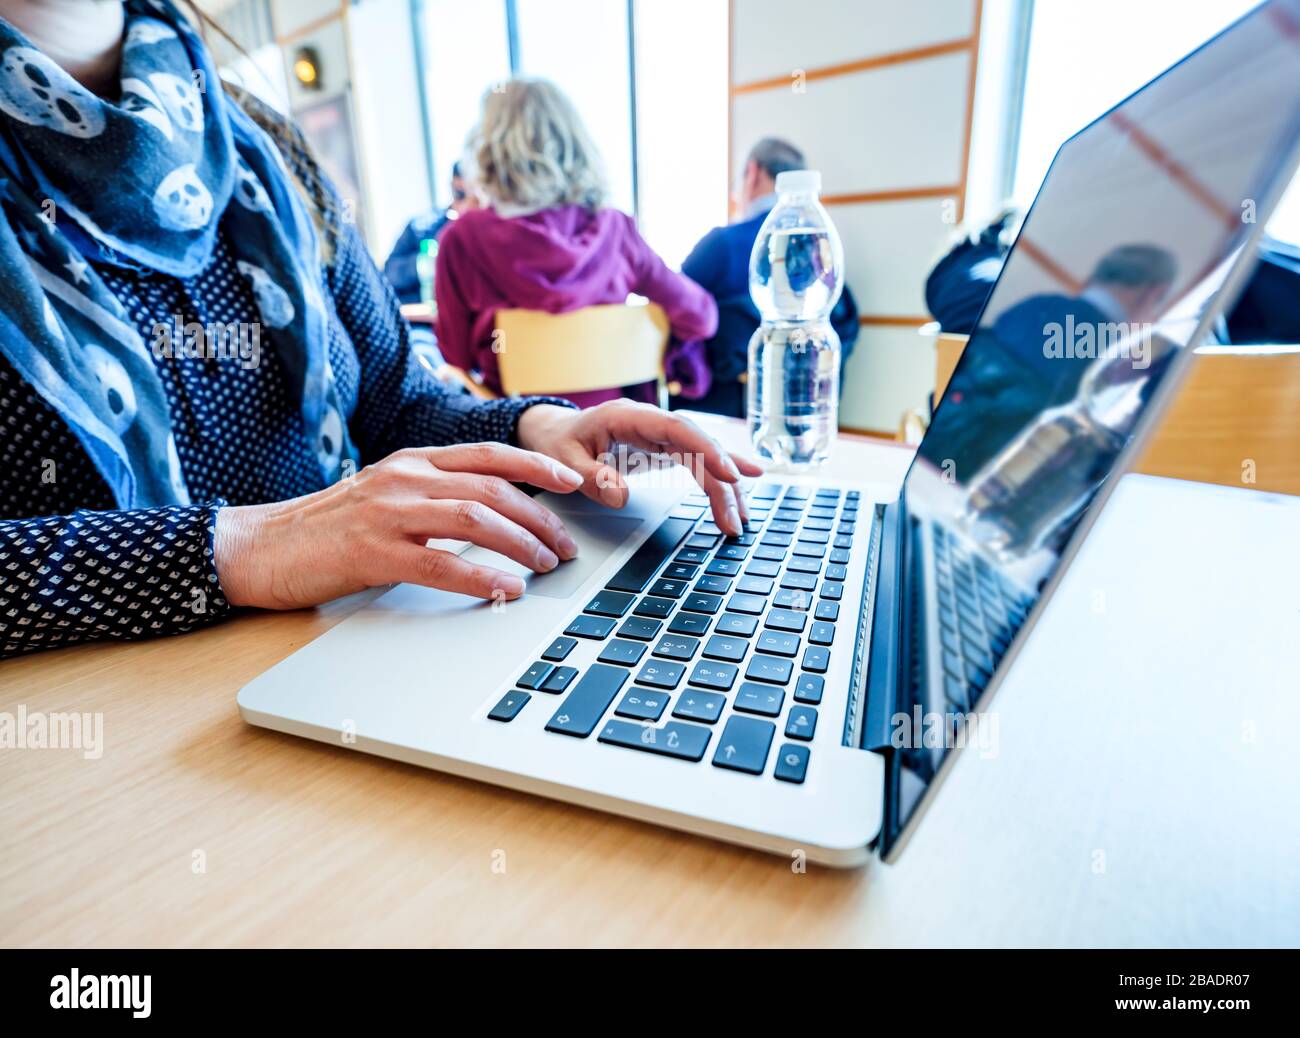 Frau, die Laptop verwendet, im Internet sucht, Informationen durchstöbert, während sie an einem Tisch an einem öffentlichen Ort sitzt Stockfoto